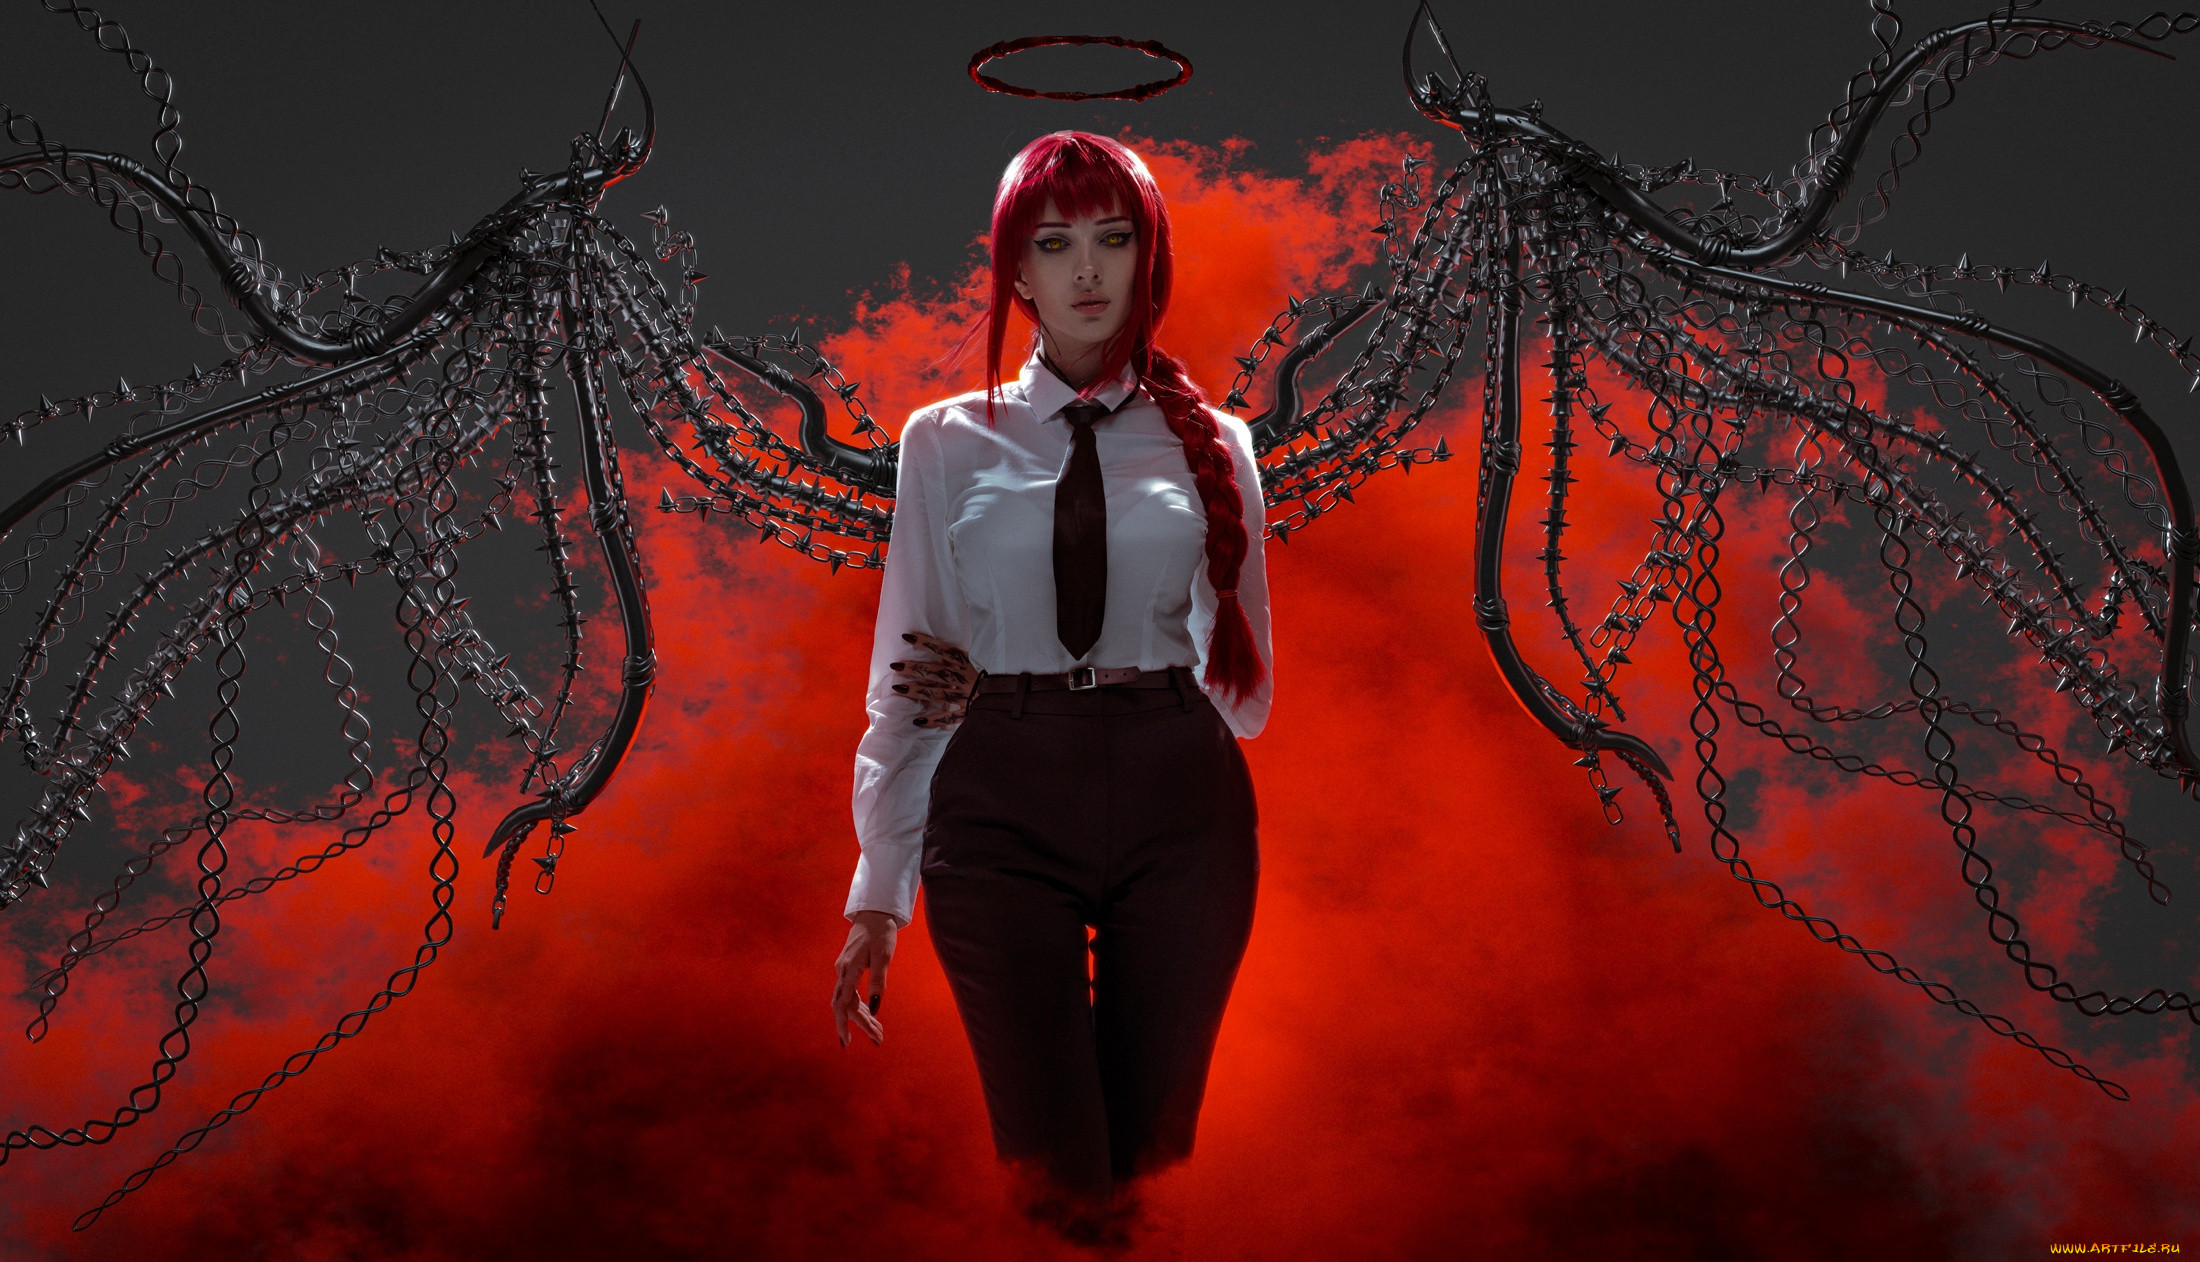 Девушка с красными волосами и крыльями из цепей на фоне красного дыма в белой блузке с галстуком